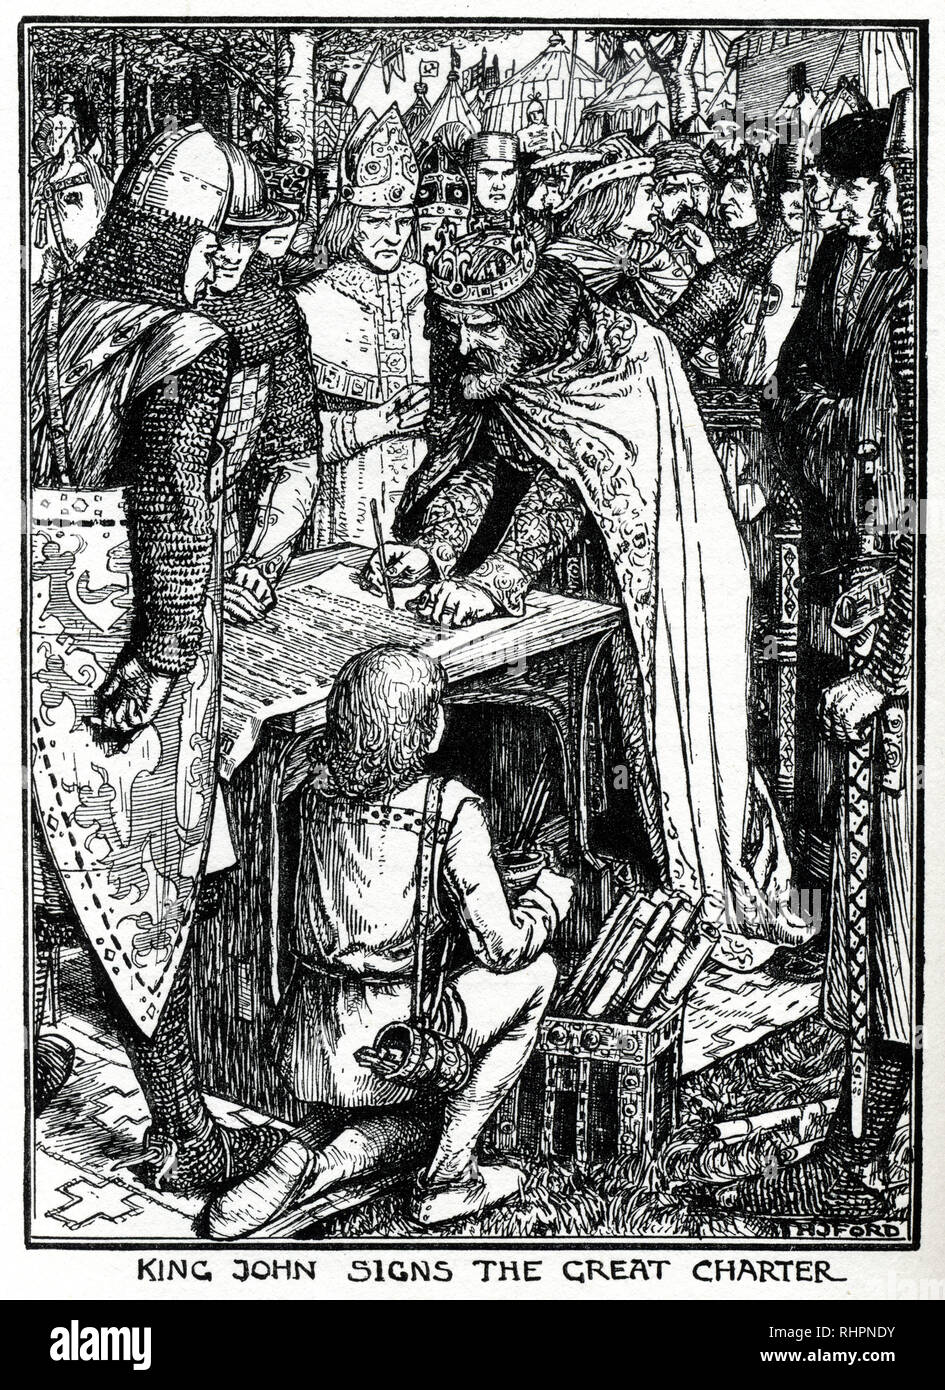 El rey Juan firma la Carta Magna. El rey Juan (1166 - 1216), también conocido como John Lackland, fue Rey de Inglaterra desde 1199 hasta 1216. La revuelta señorial a finales del reinado de Juan condujo a la estanquidad de la Carta Magna. Foto de stock